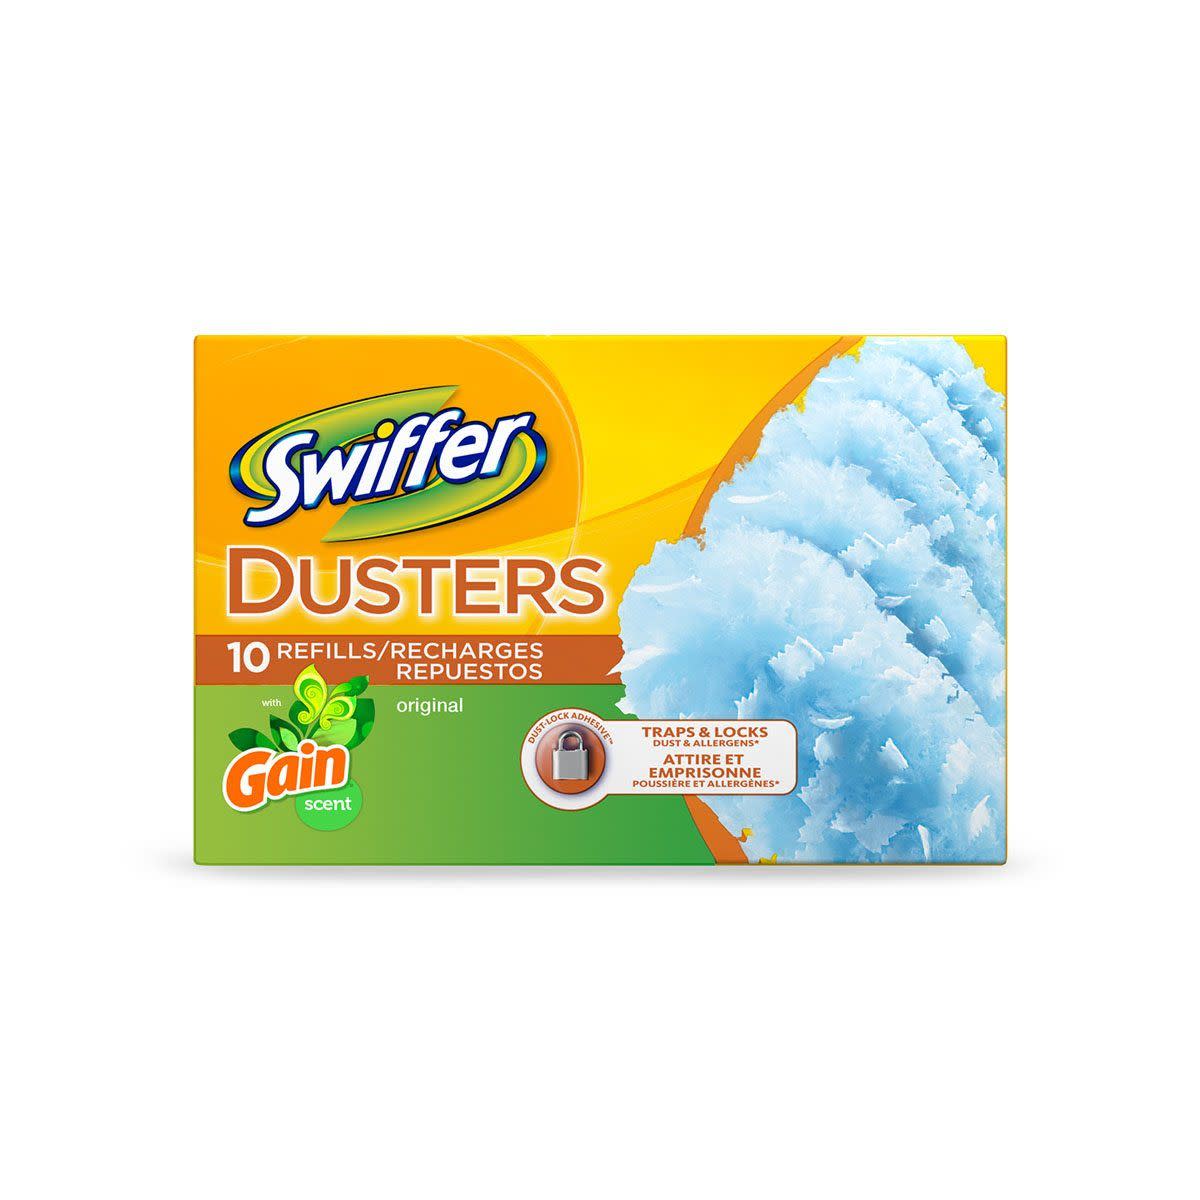 Pañitos de repuesto Swiffer Duster con Gain